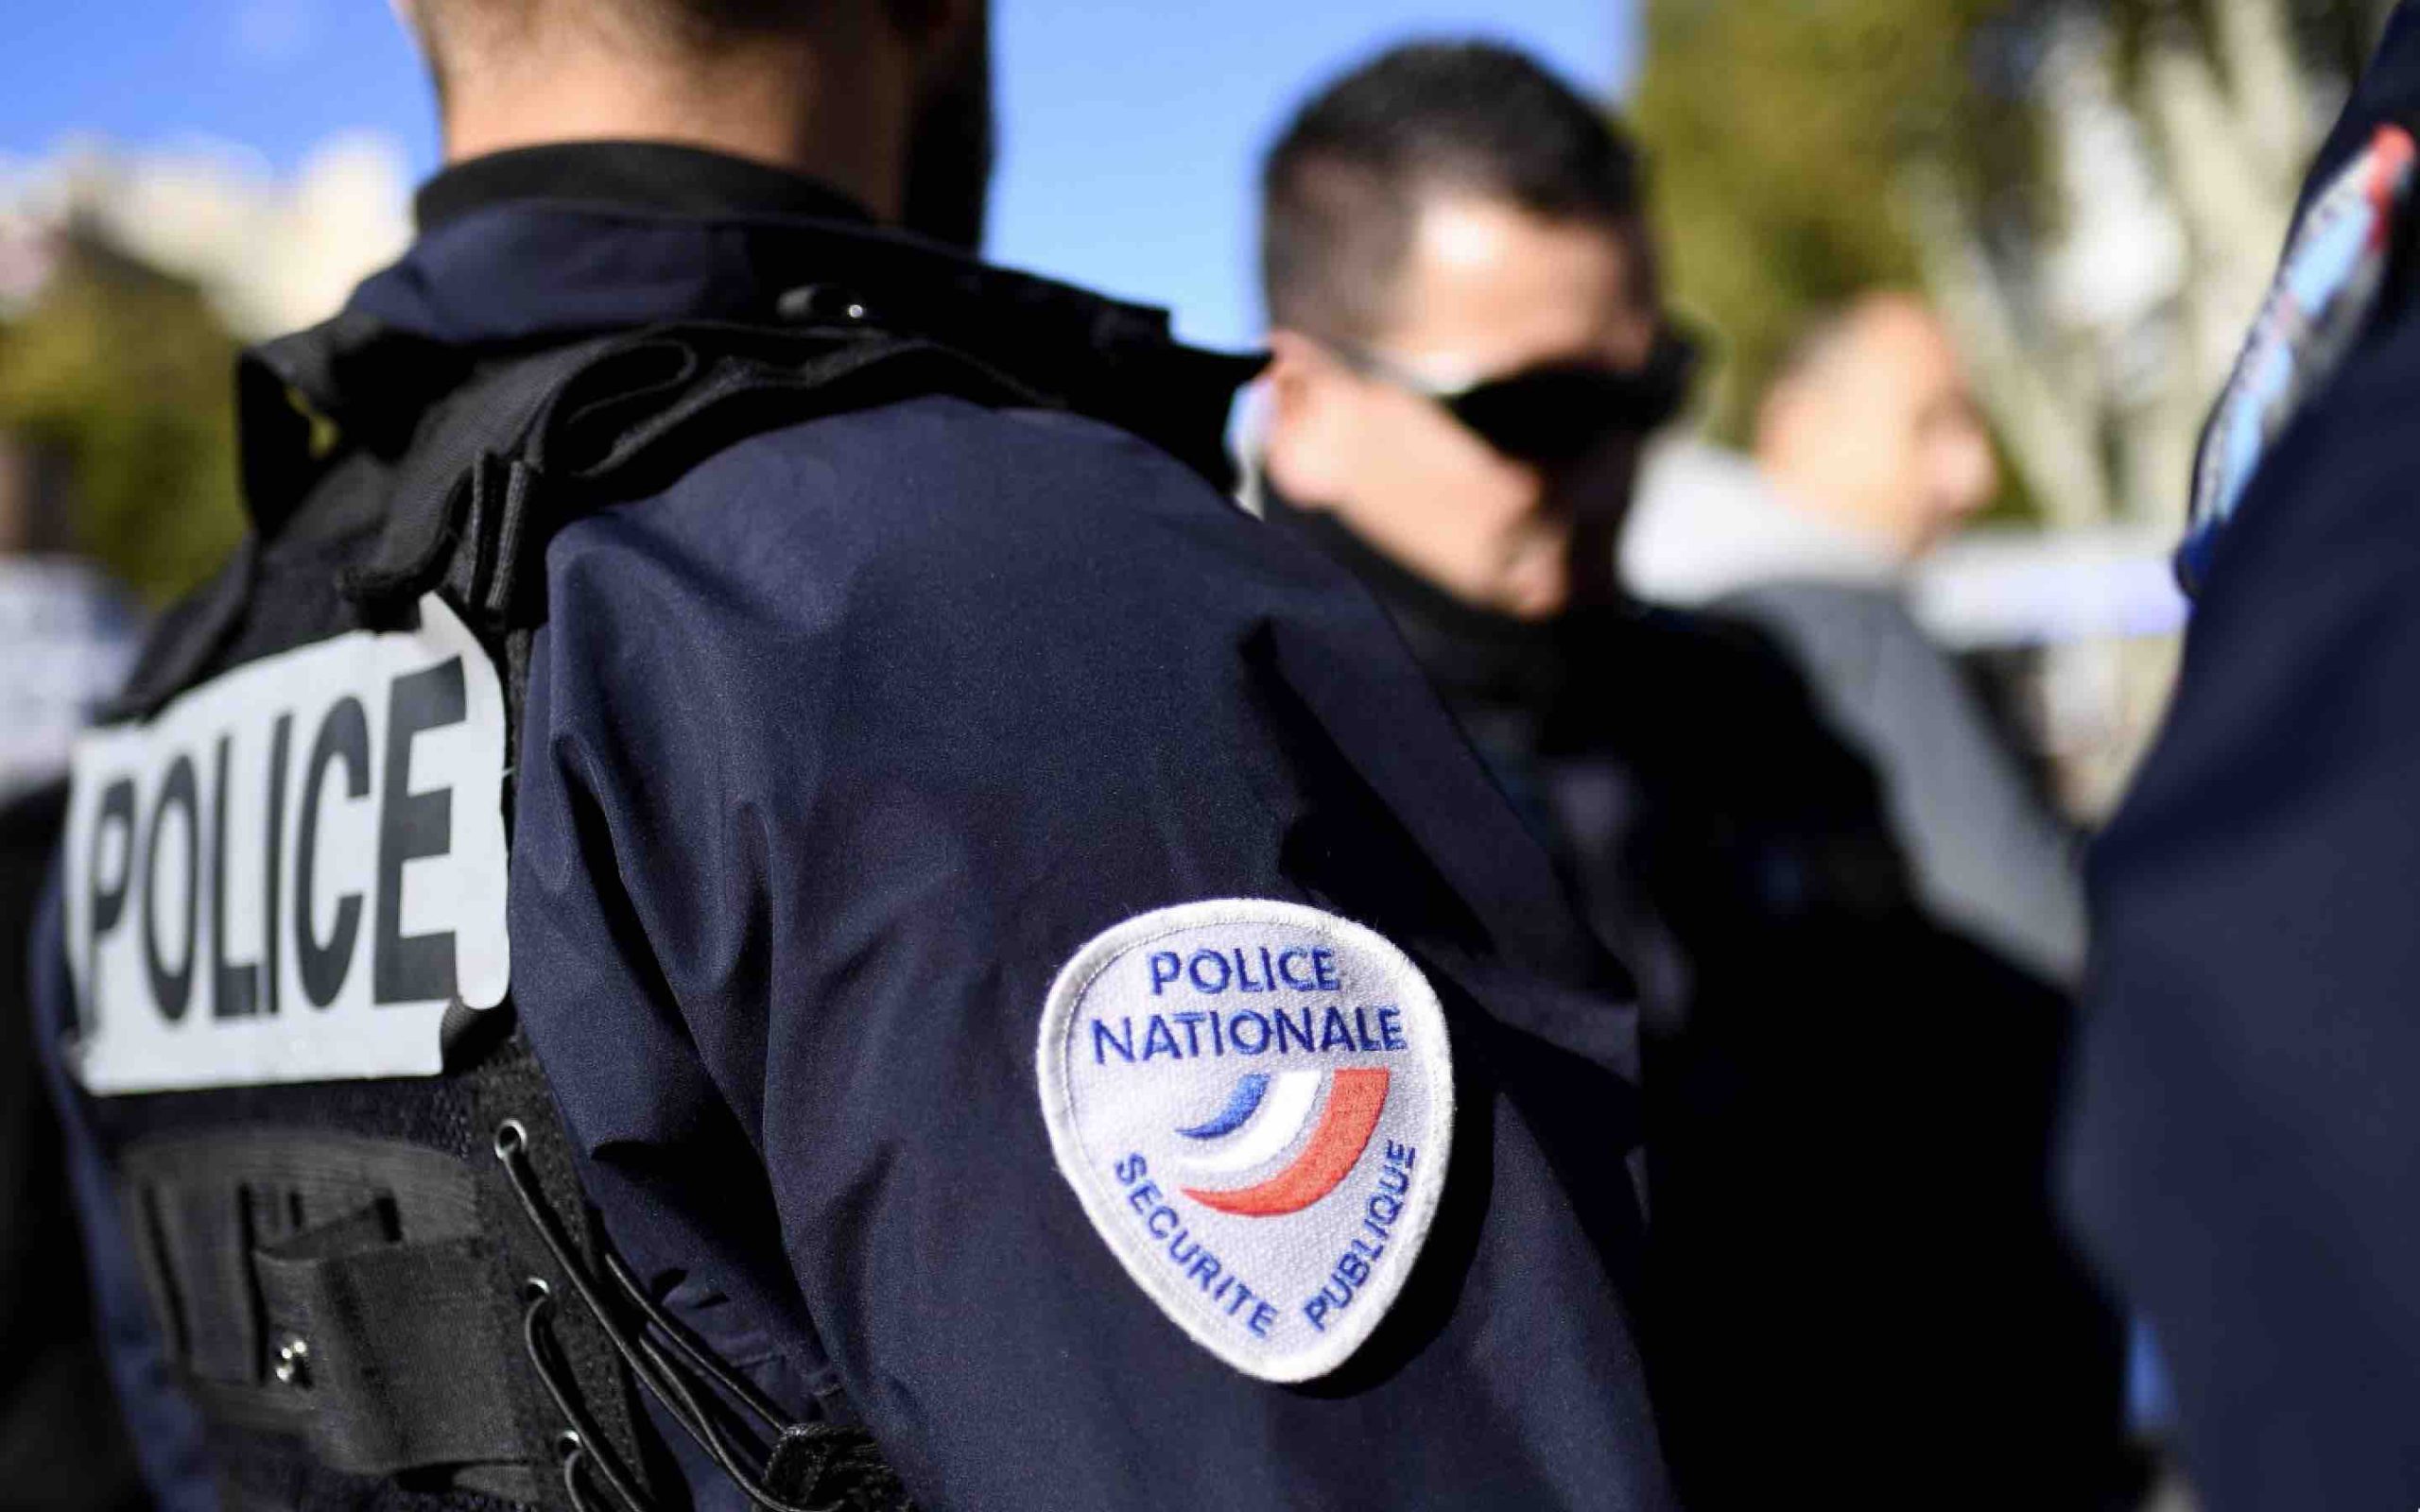 Police nationale France policier français